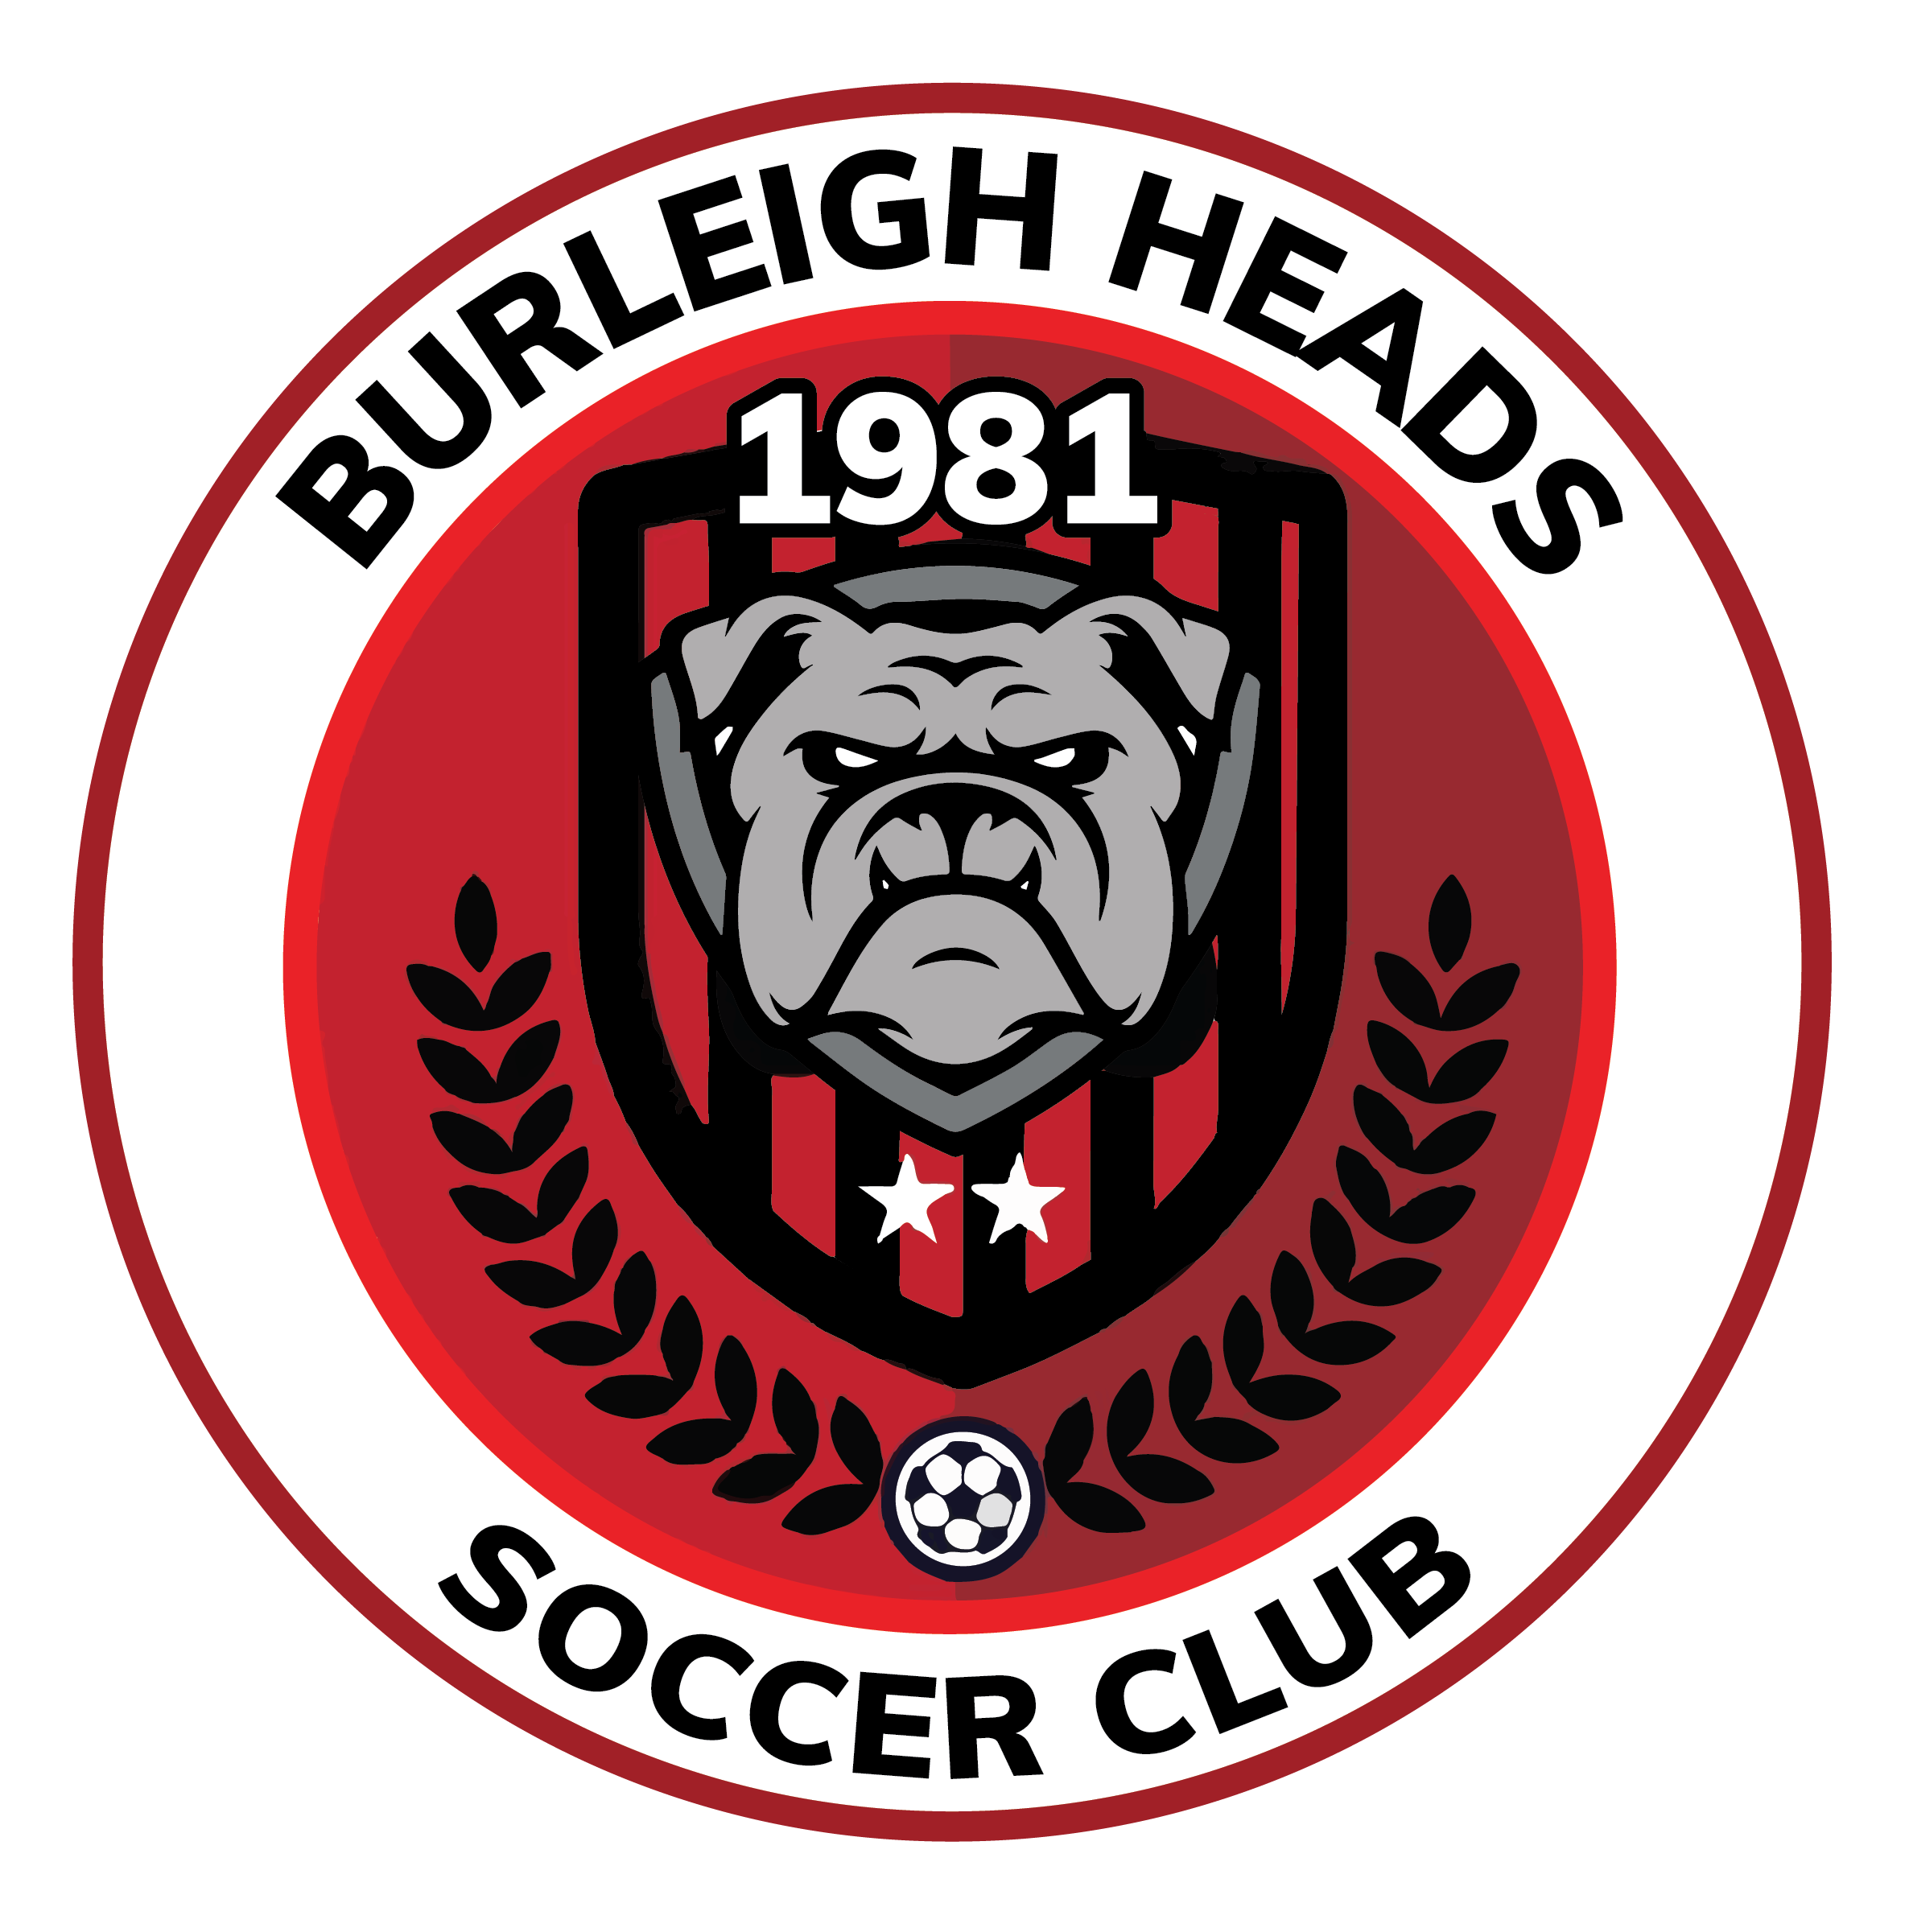 Burleigh Heads Soccer Club – Burleigh Heads Soccer Club